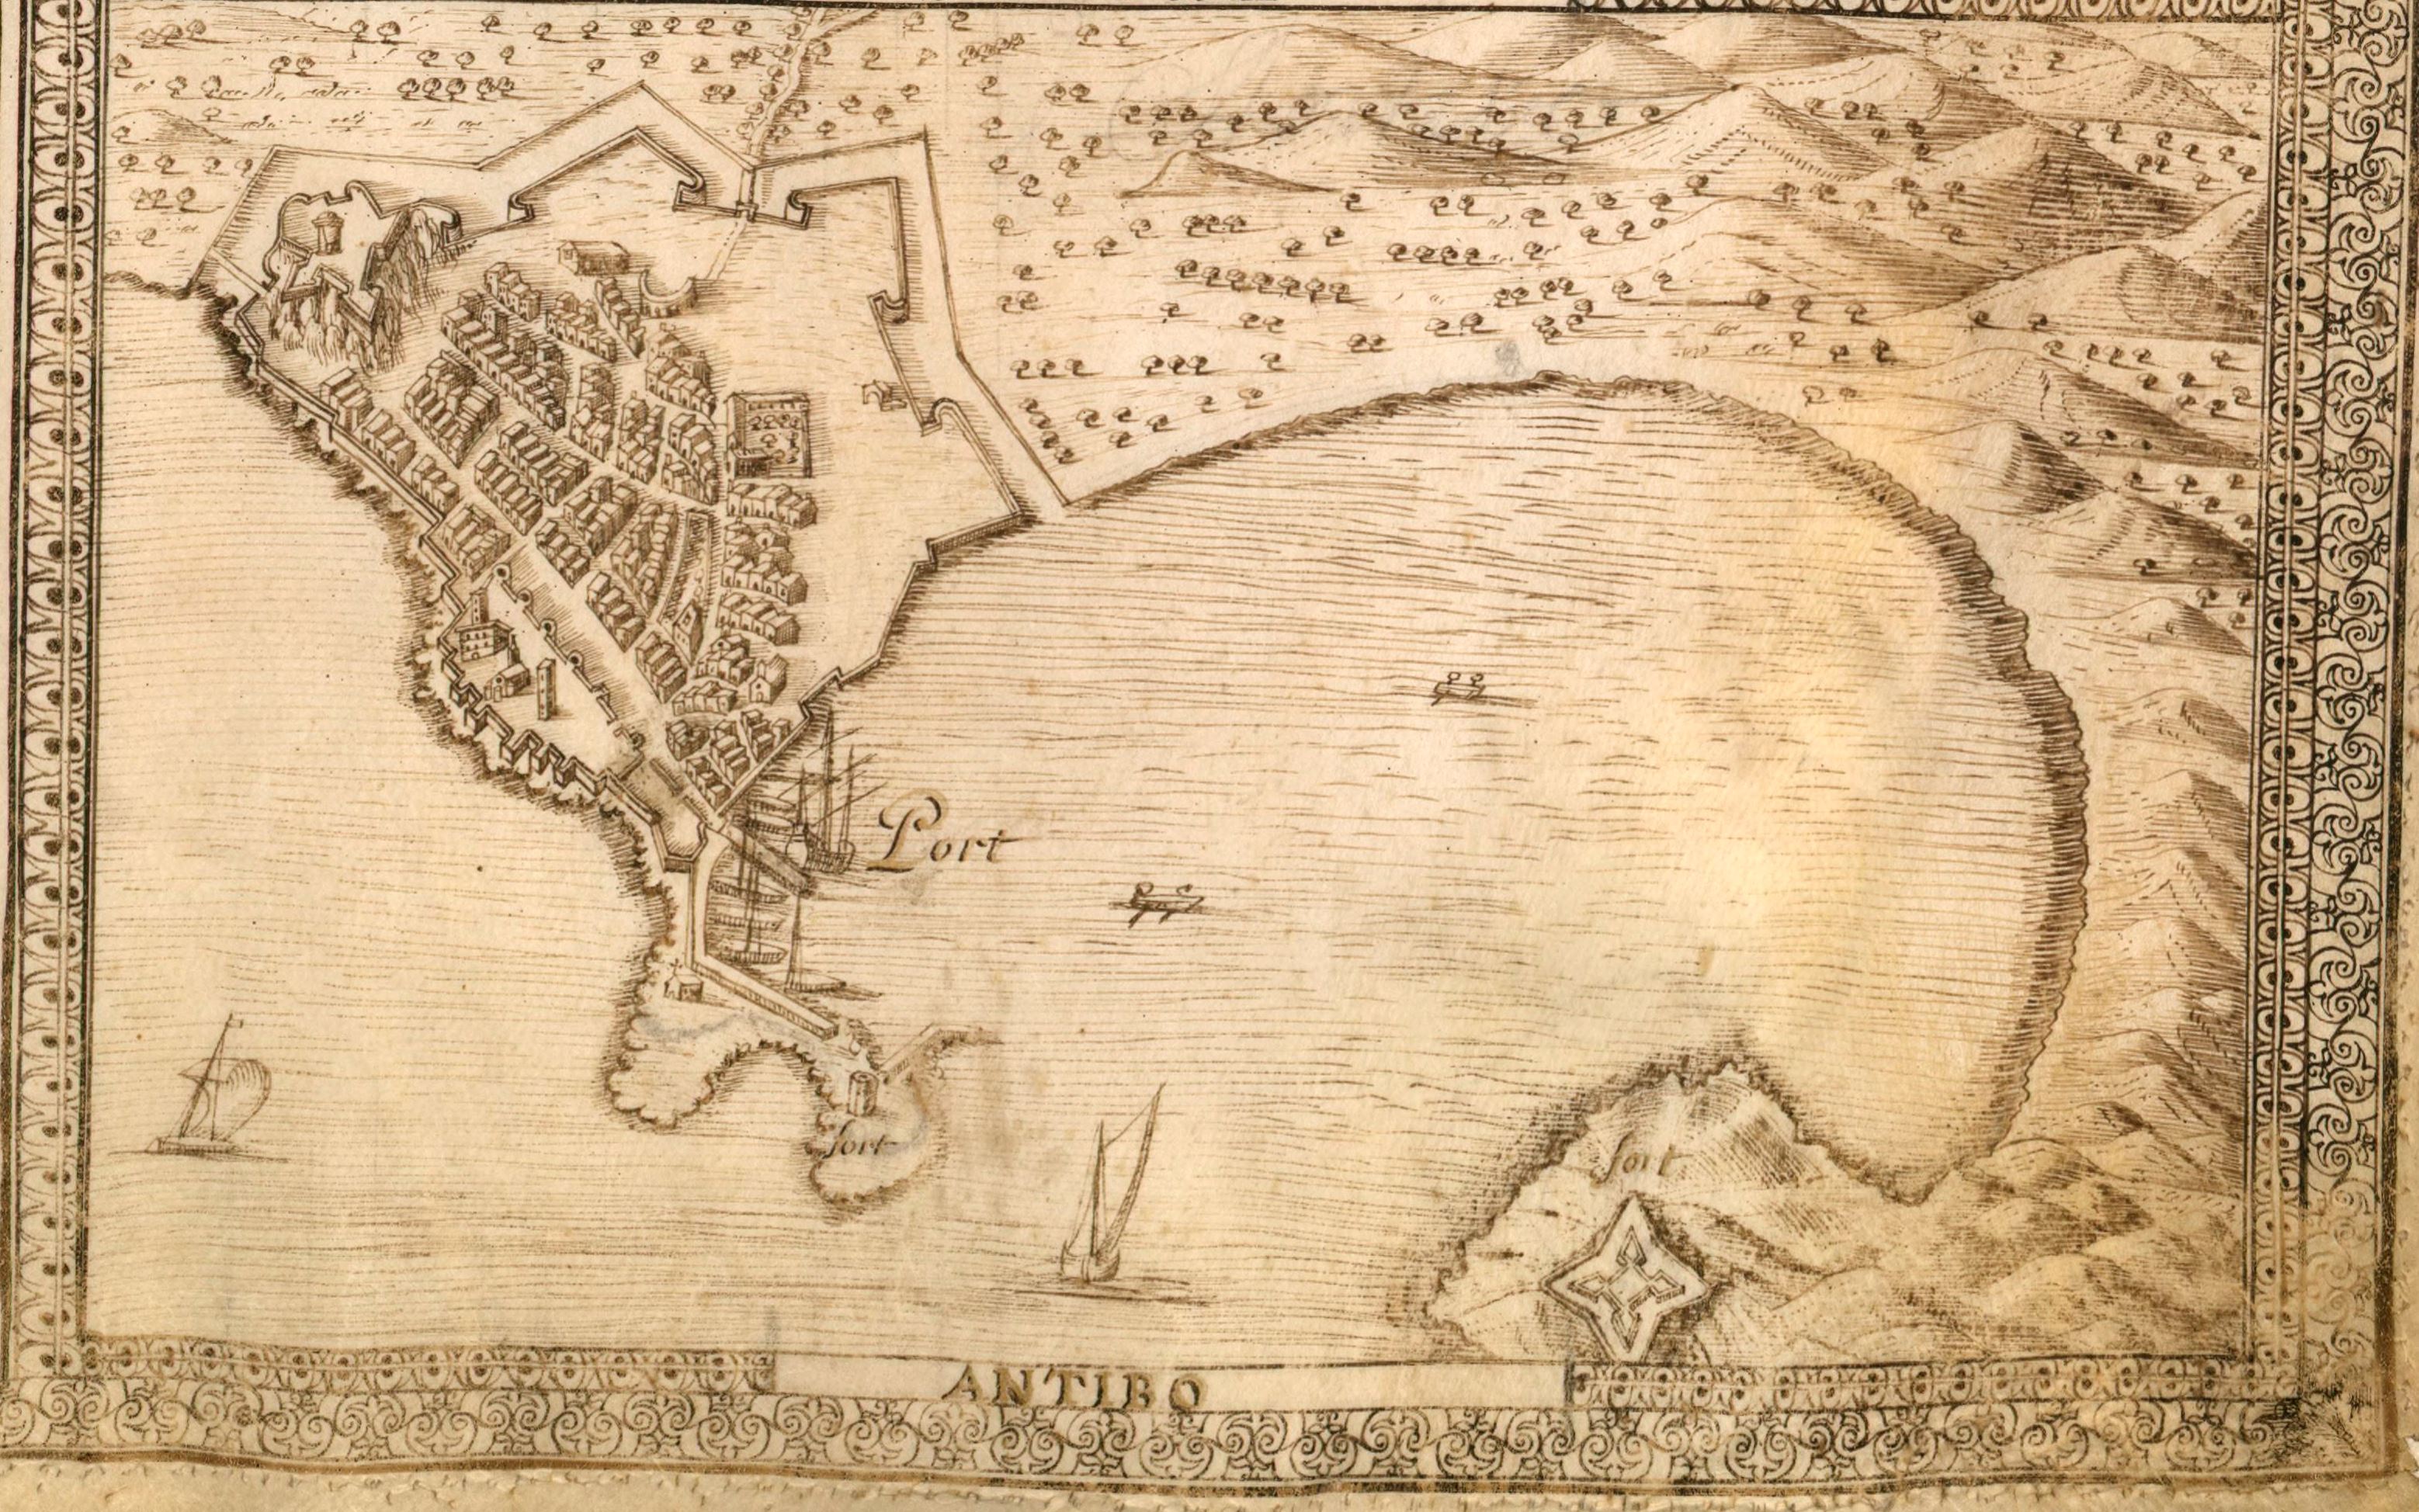 Antibo. [Vue perspective du port d'Antibes vers 1630].